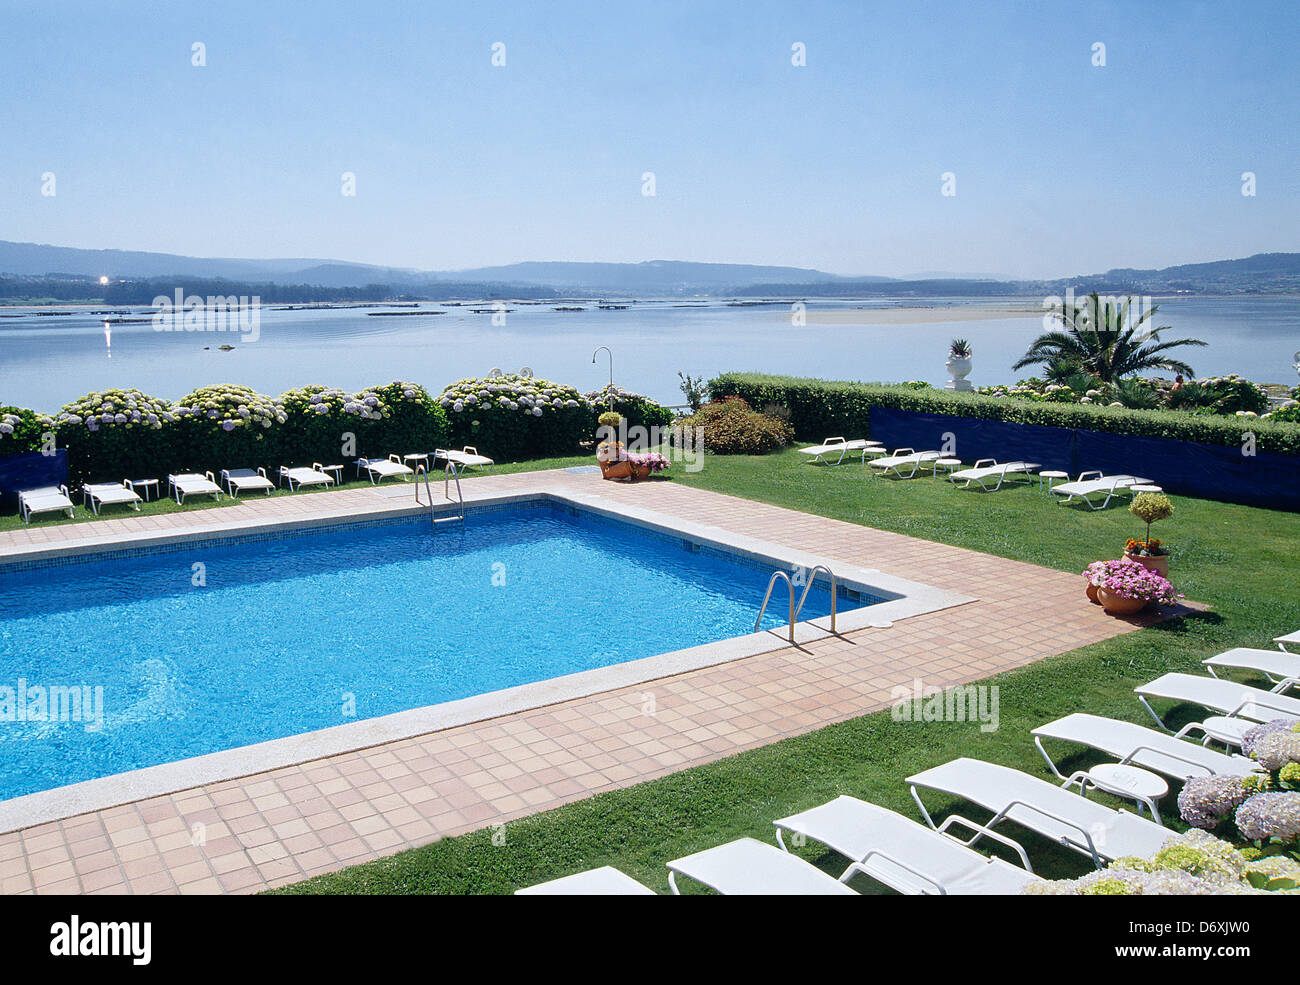 La piscina e la vista delle RIA. La Toja island, O Grove, Pontevedra, Galizia, Spagna. Foto Stock